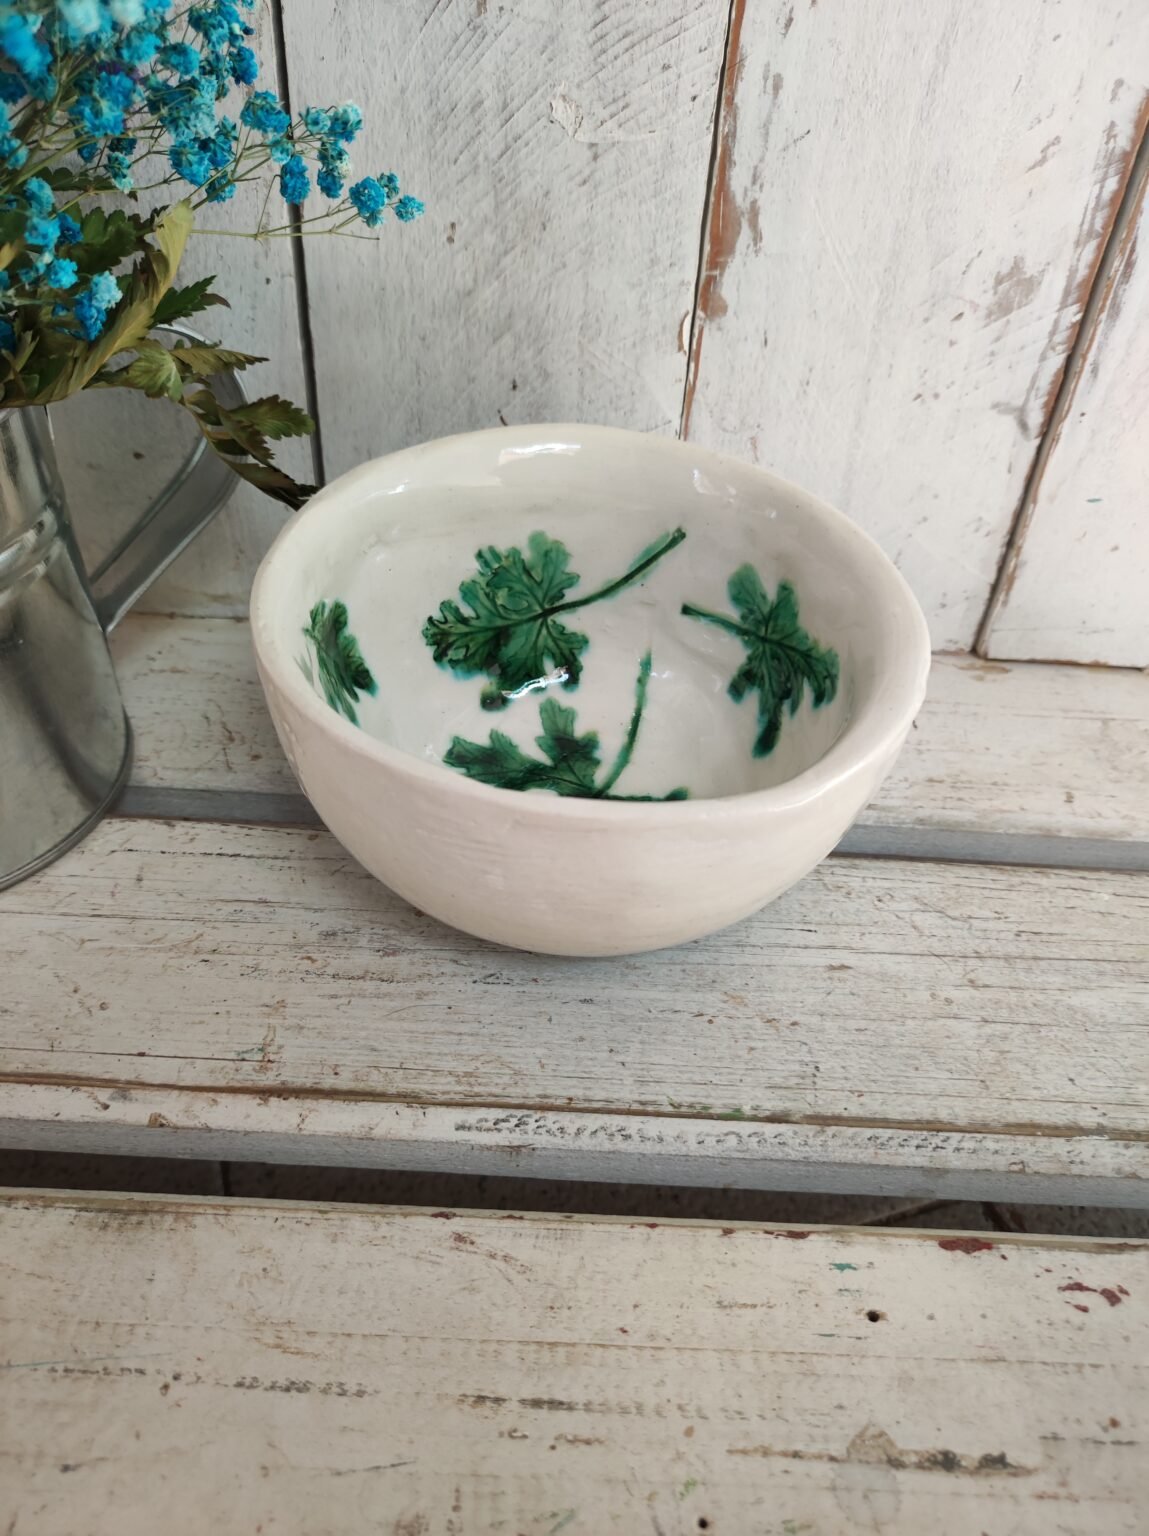 Bol de ceramica decorado con hojas verdes